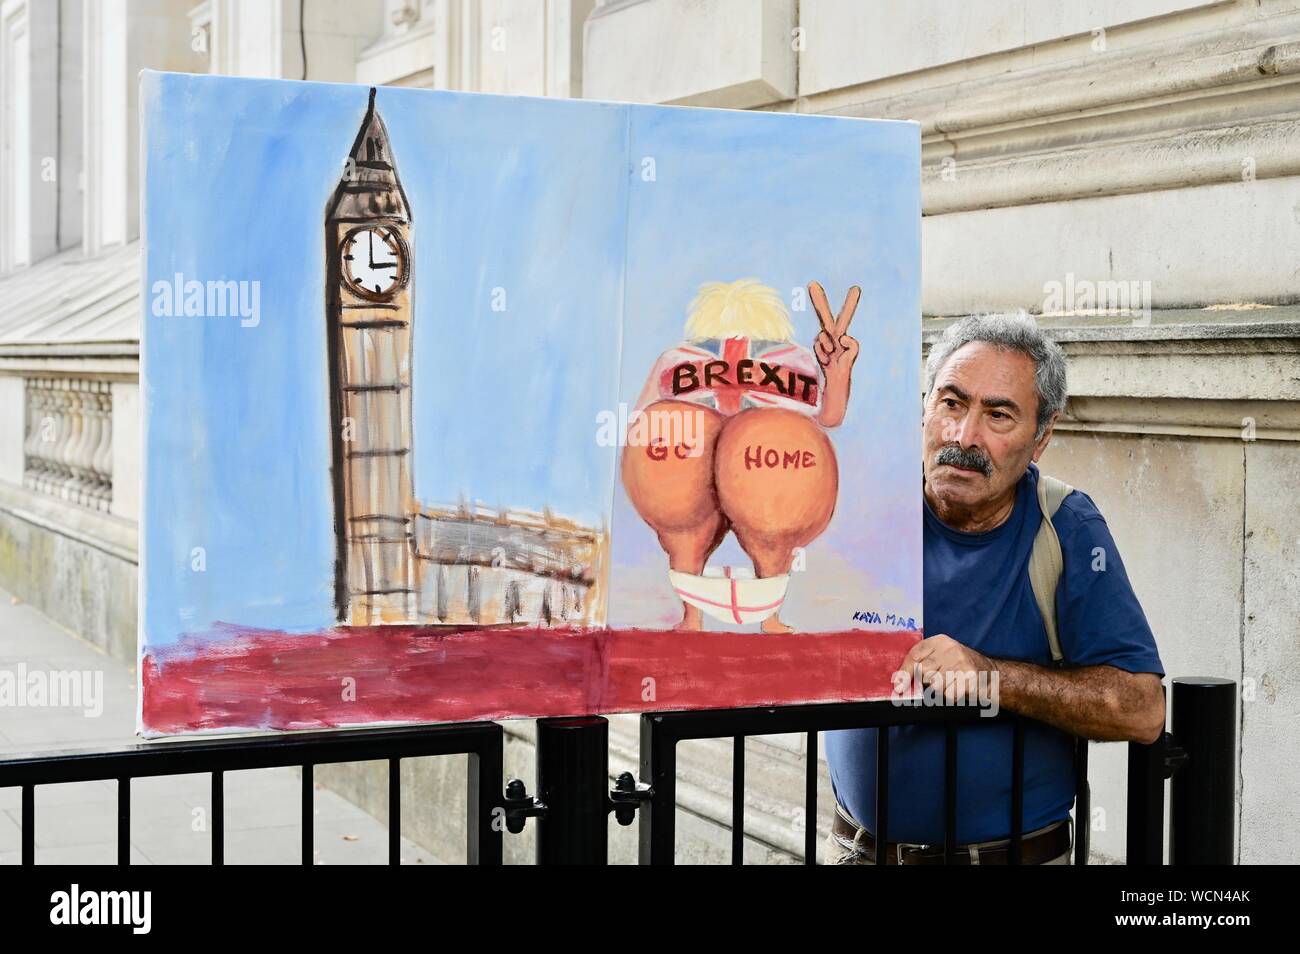 Politischer Künstler Kaya Mar zeigt seine neuesten satirischen Nehmen auf Premierminister Boris Johnson bei der Verarbeitung von Brexit. Eingang 10 Downing Street, Whitehall, London. Großbritannien Stockfoto